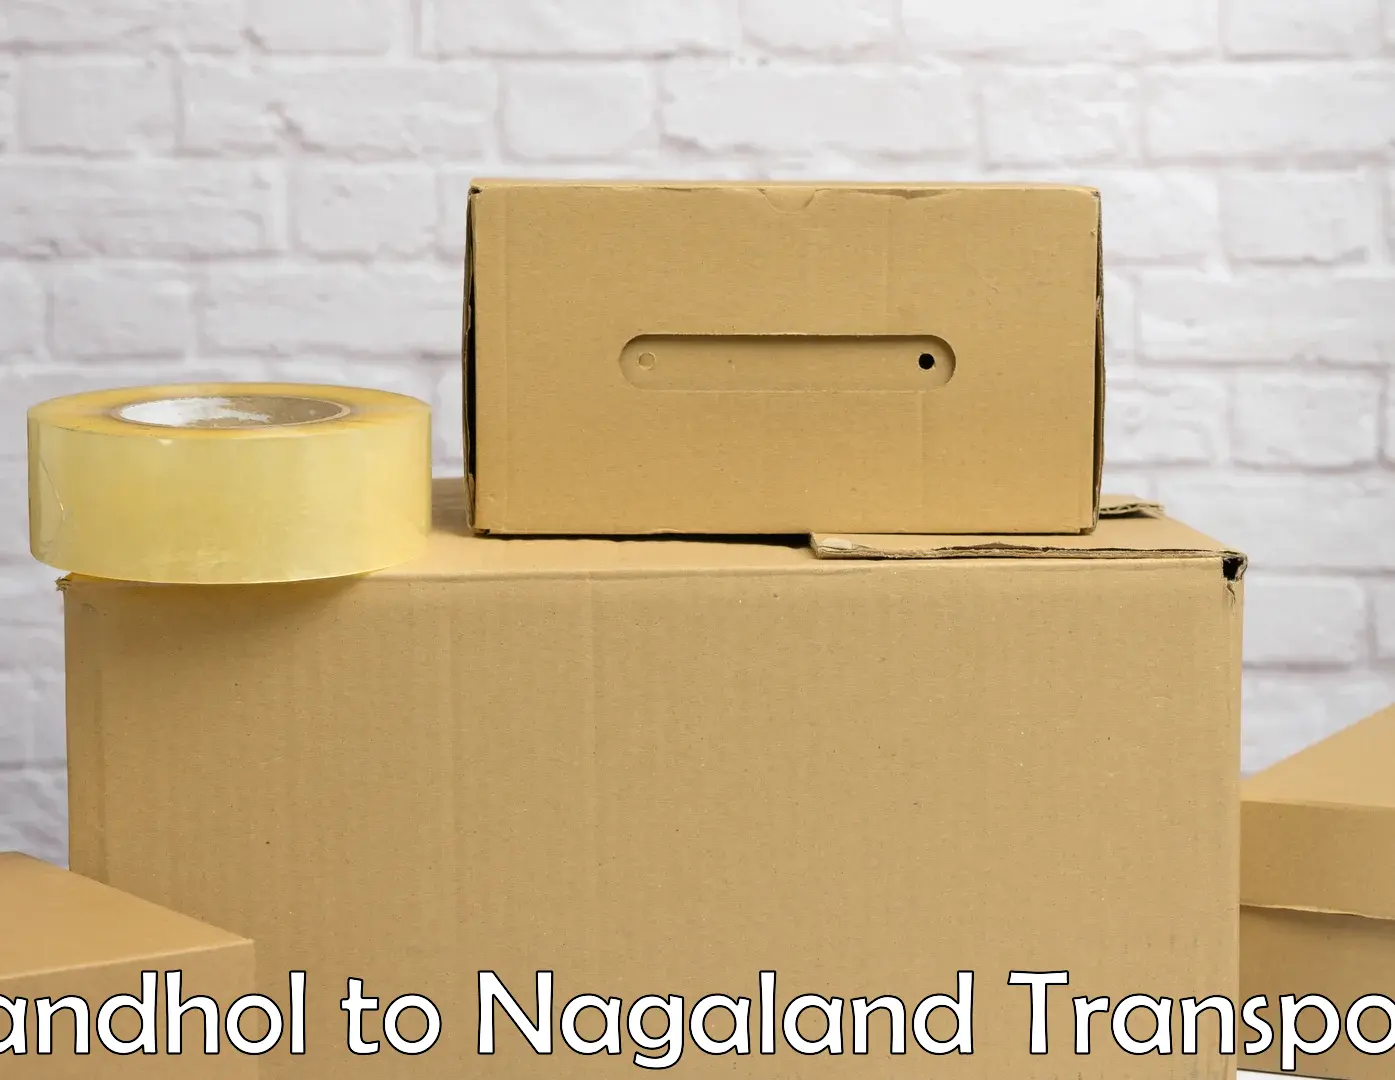 Delivery service Sandhol to NIT Nagaland